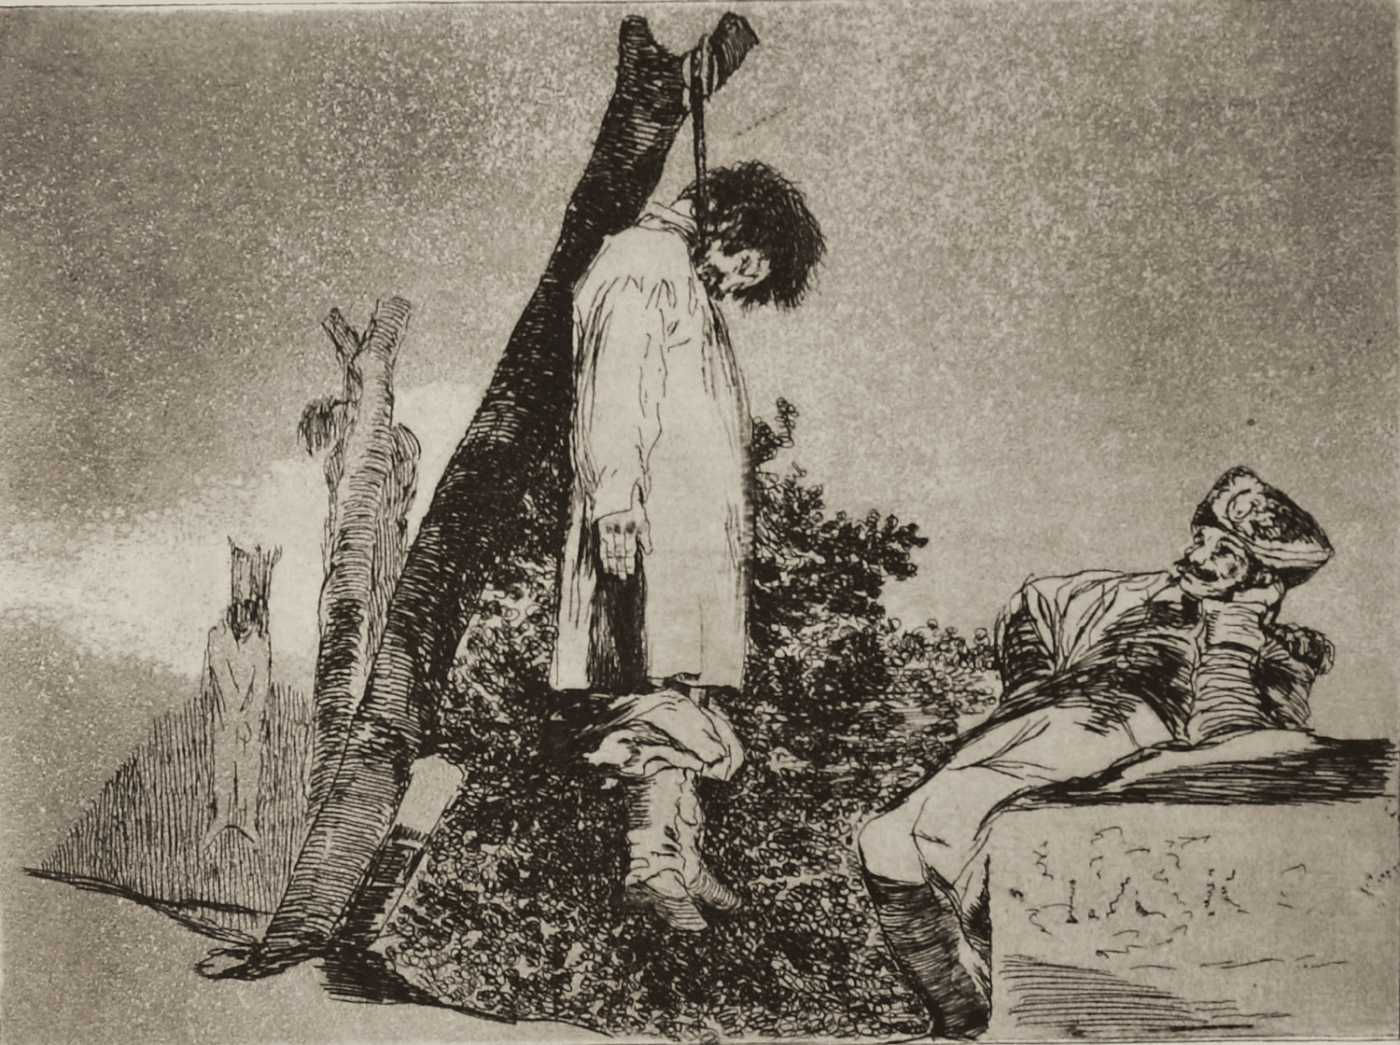 Francisco José de Goya y Lucientes, Tampoco (Los Desastres de la Guerra, Blatt 36), 1810–1814